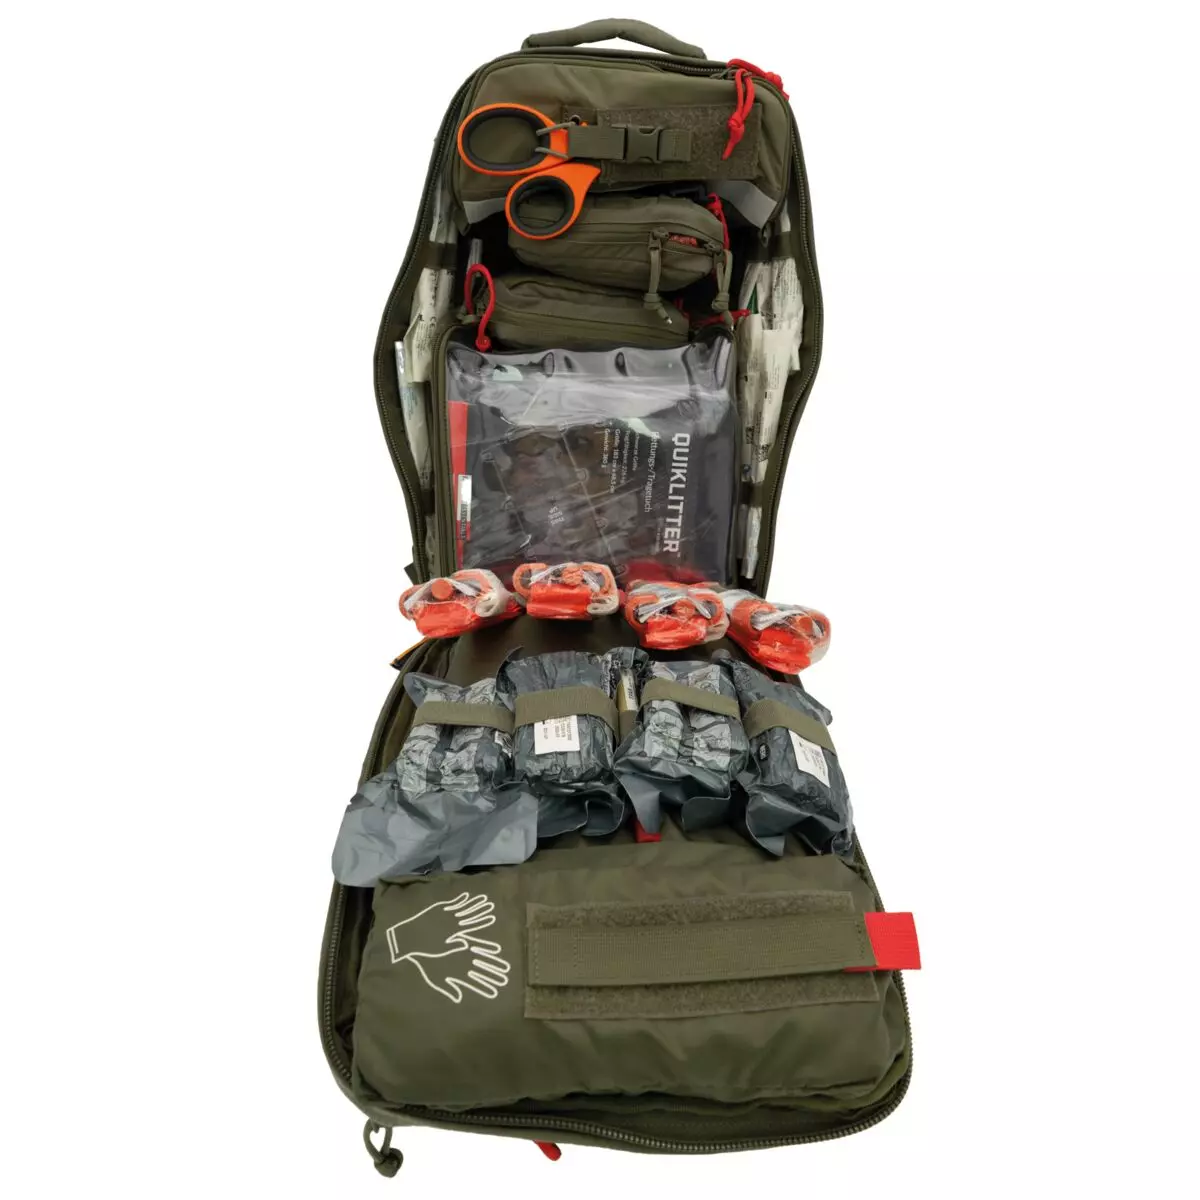 WERO MED-X® MANV backpack filled